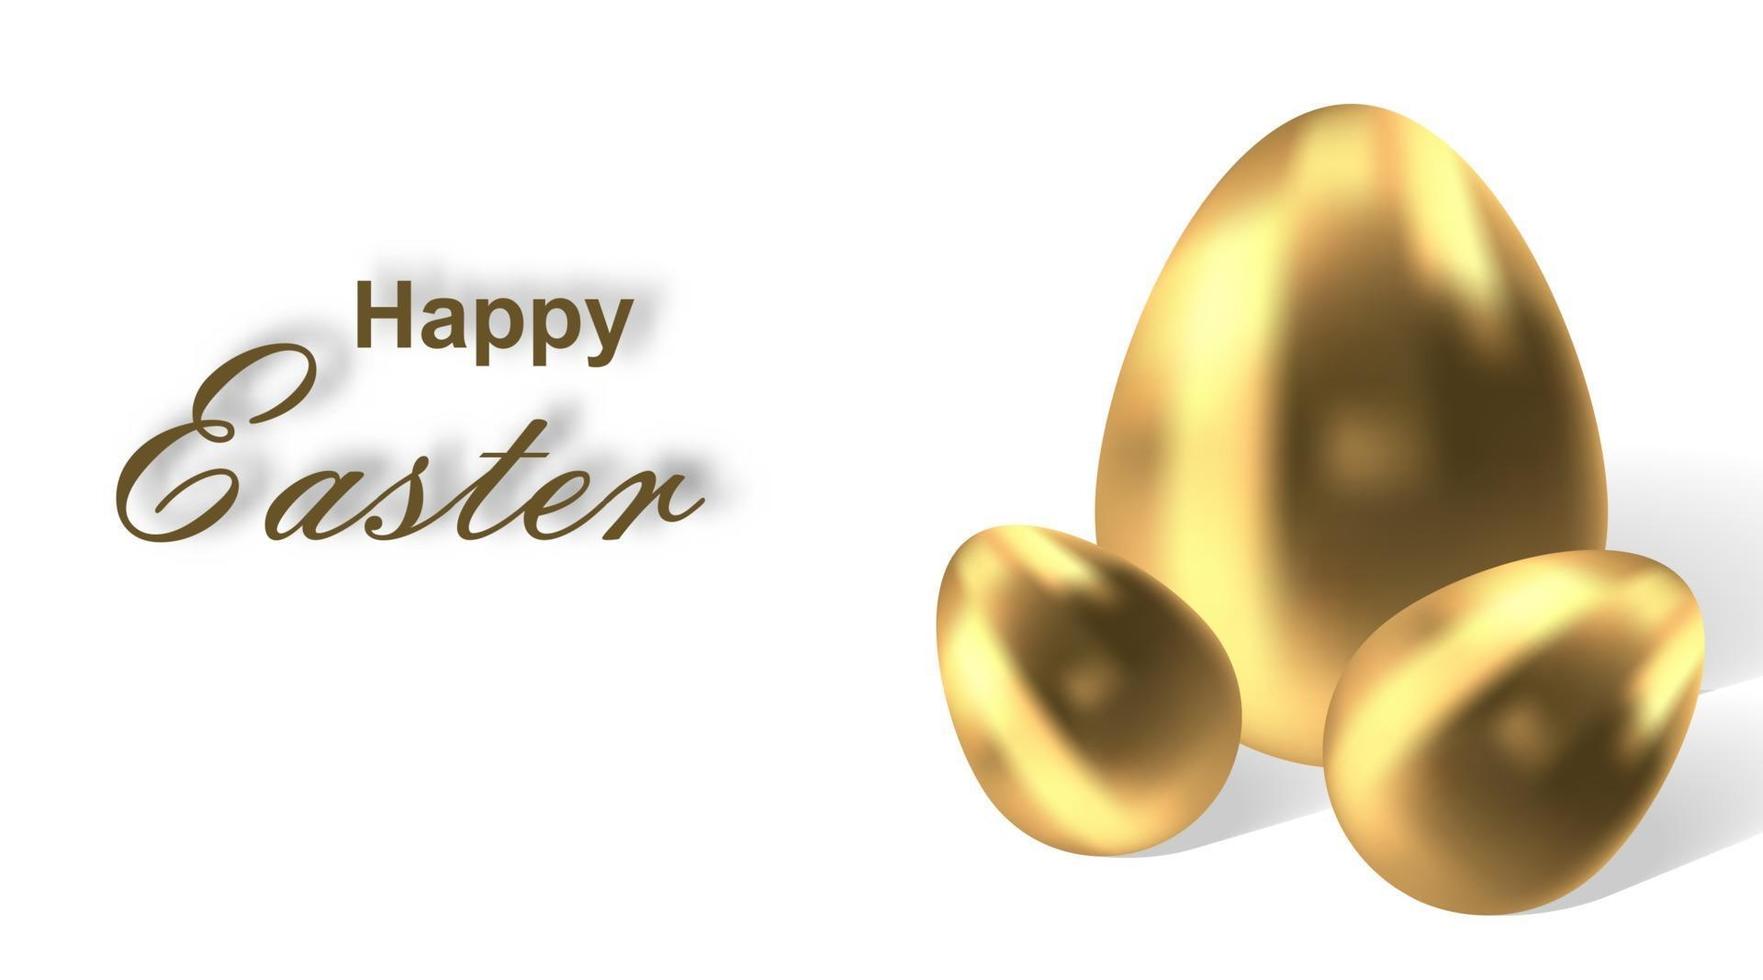 joyeuses Pâques. illustration vectorielle du vecteur d'oeuf de Pâques doré. symbole religieux chrétien. ensemble d'oeufs 3d isolé sur fond blanc. éléments décoratifs pour la conception